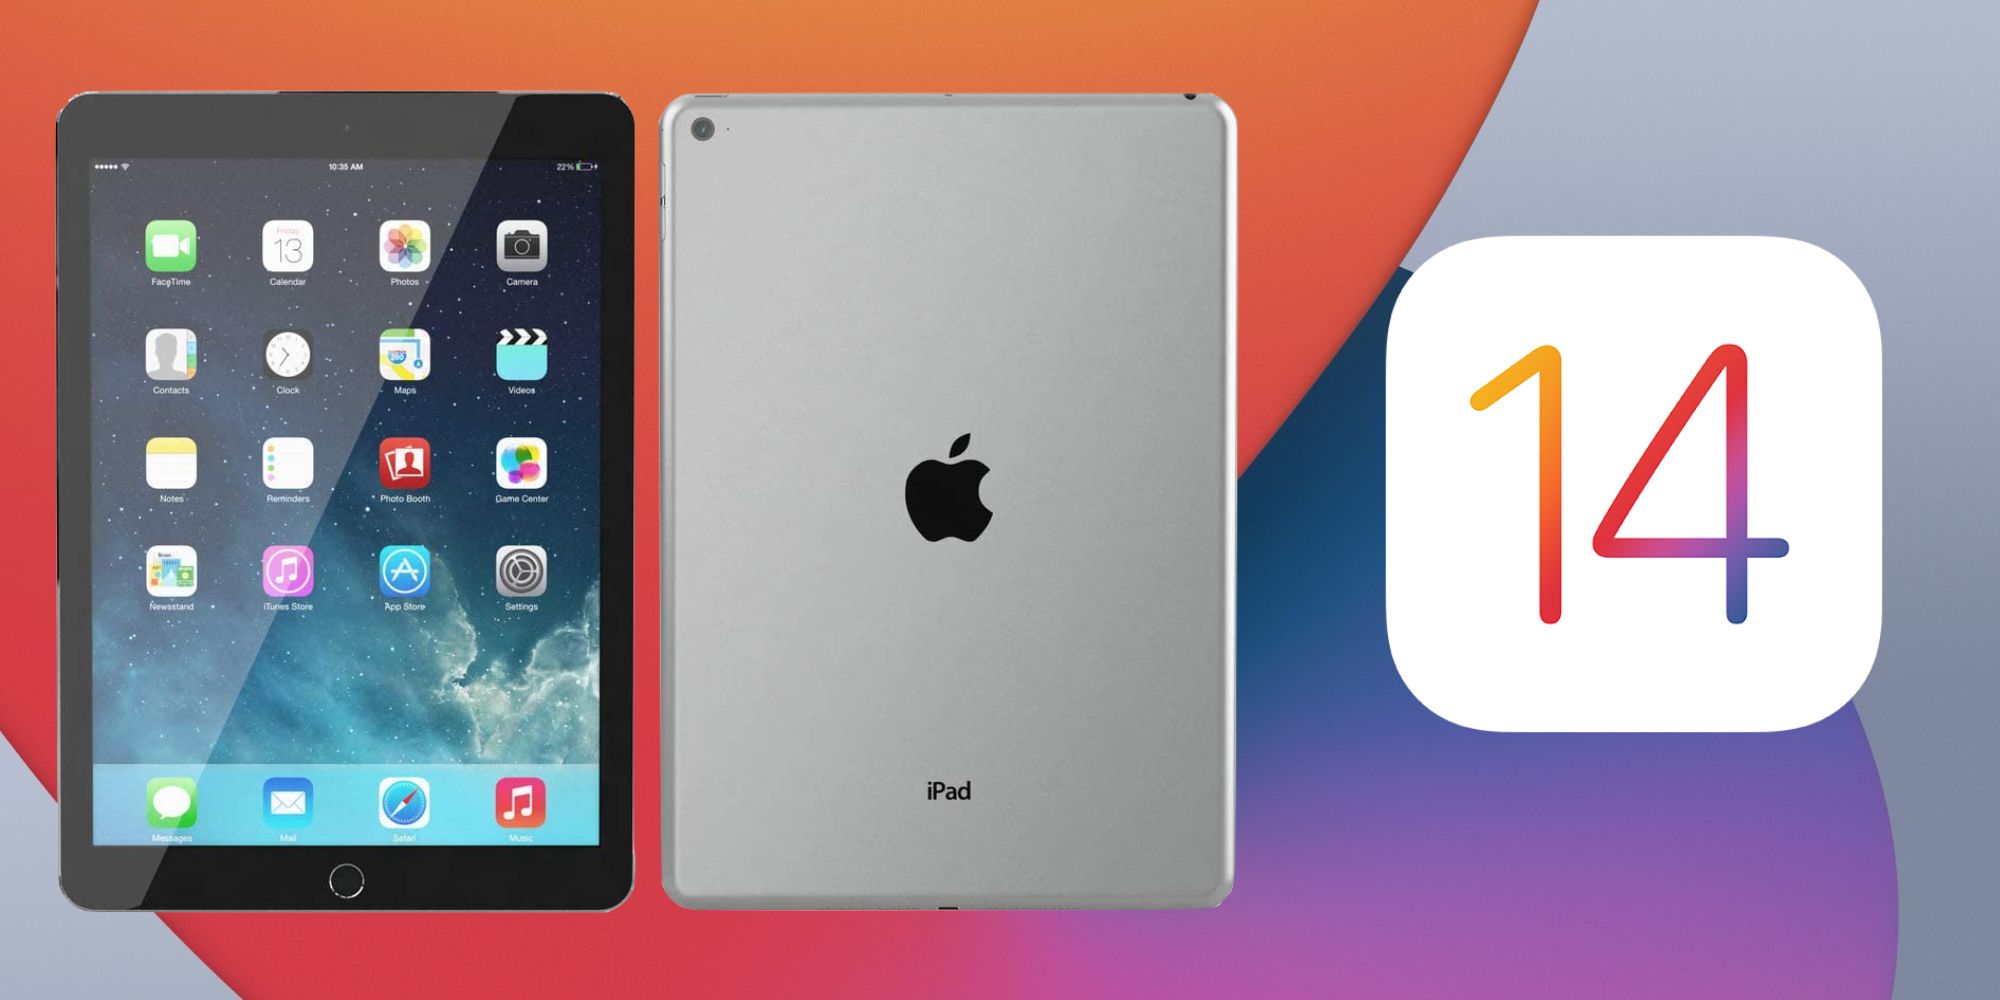 iPad Air 2 next to the iOS 14 logo